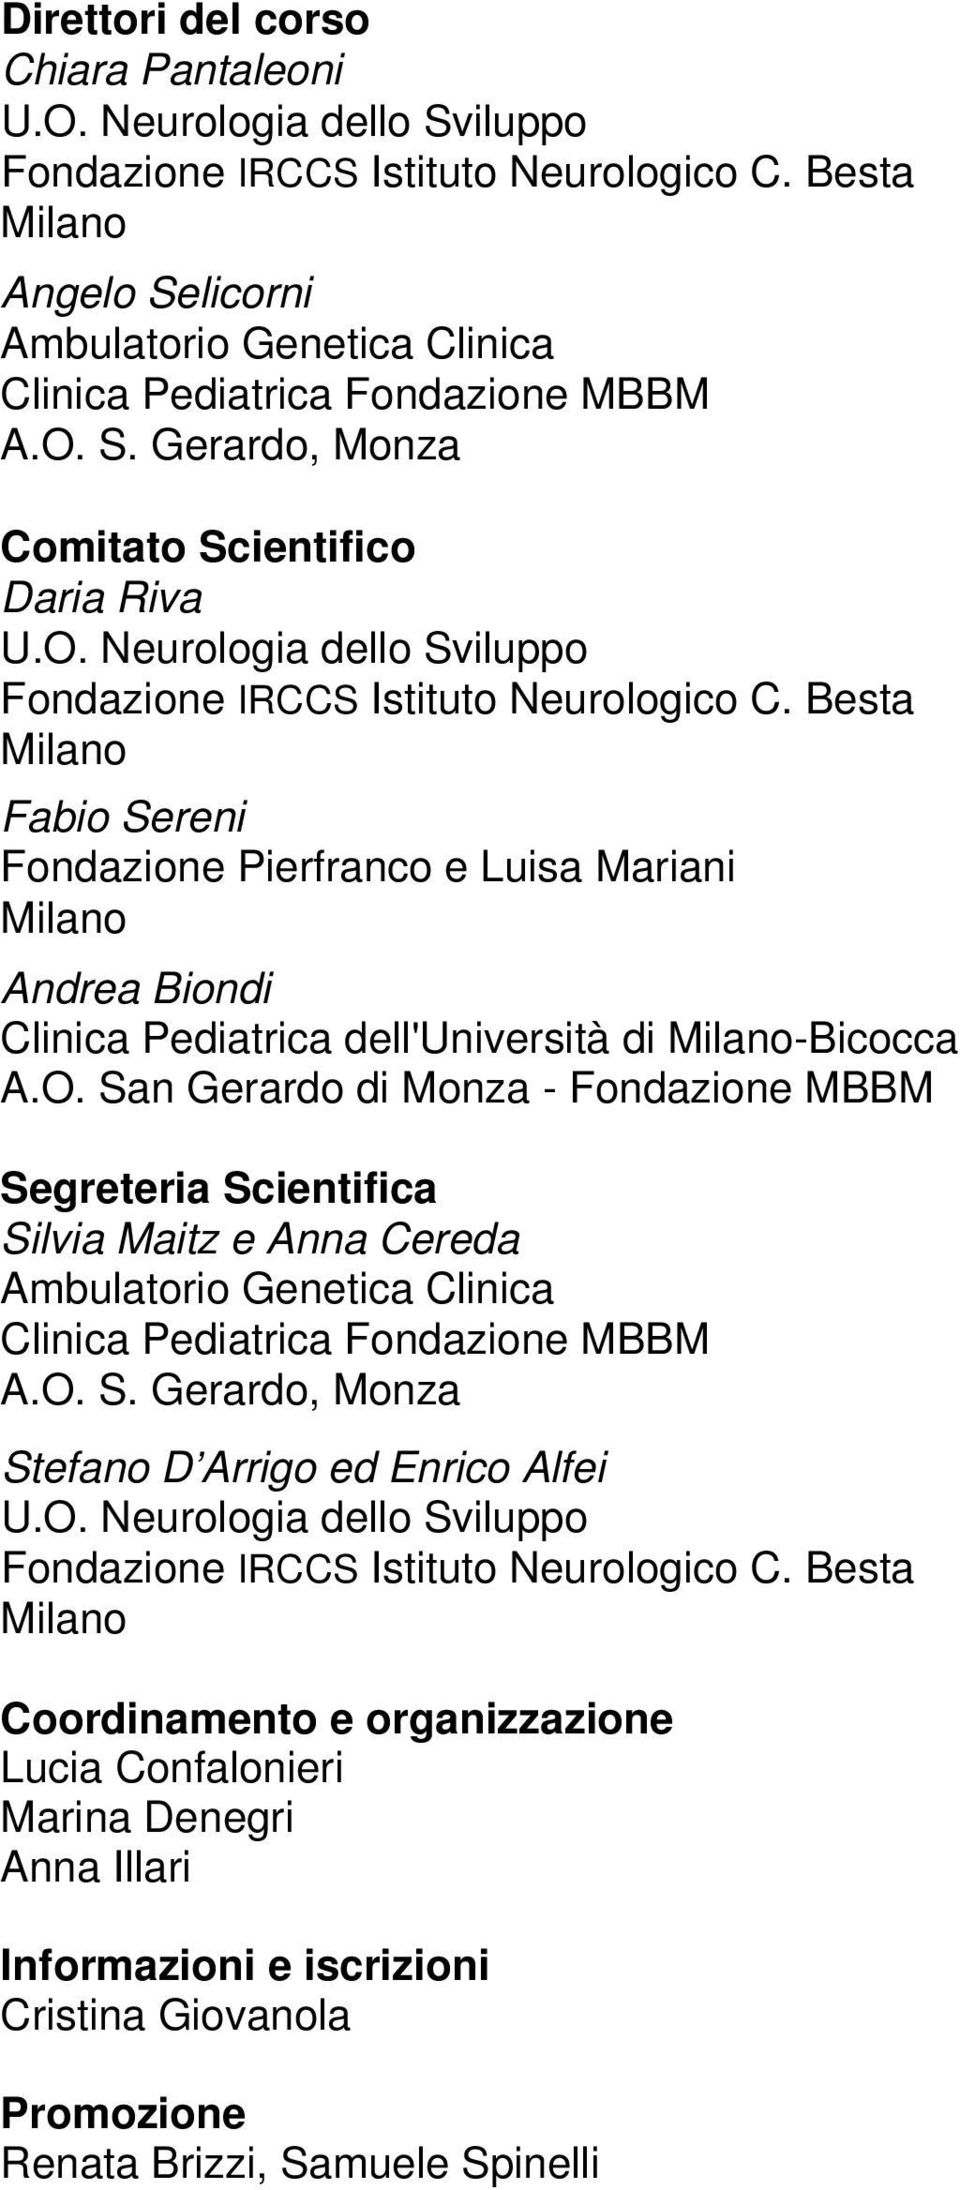 Besta Fabio Sereni Fondazione Pierfranco e Luisa Mariani Andrea Biondi Clinica Pediatrica dell'università di -Bicocca A.O.